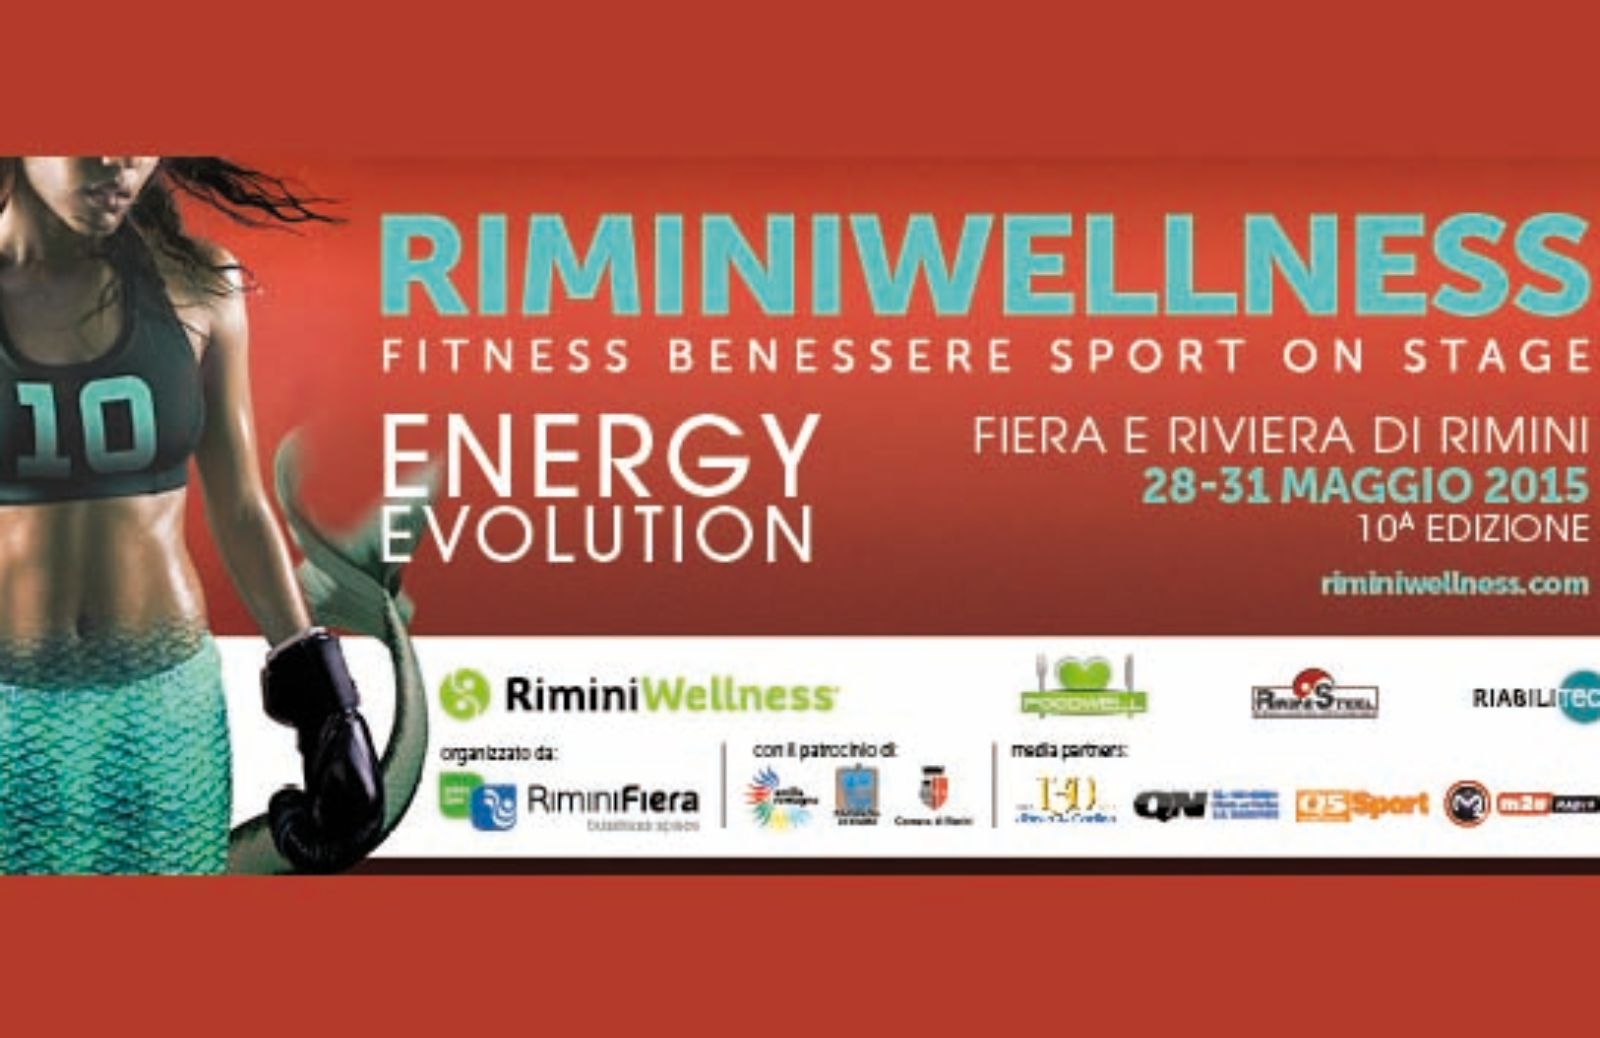 Rimini wellness, in un corpo da sirena le novità del fitness